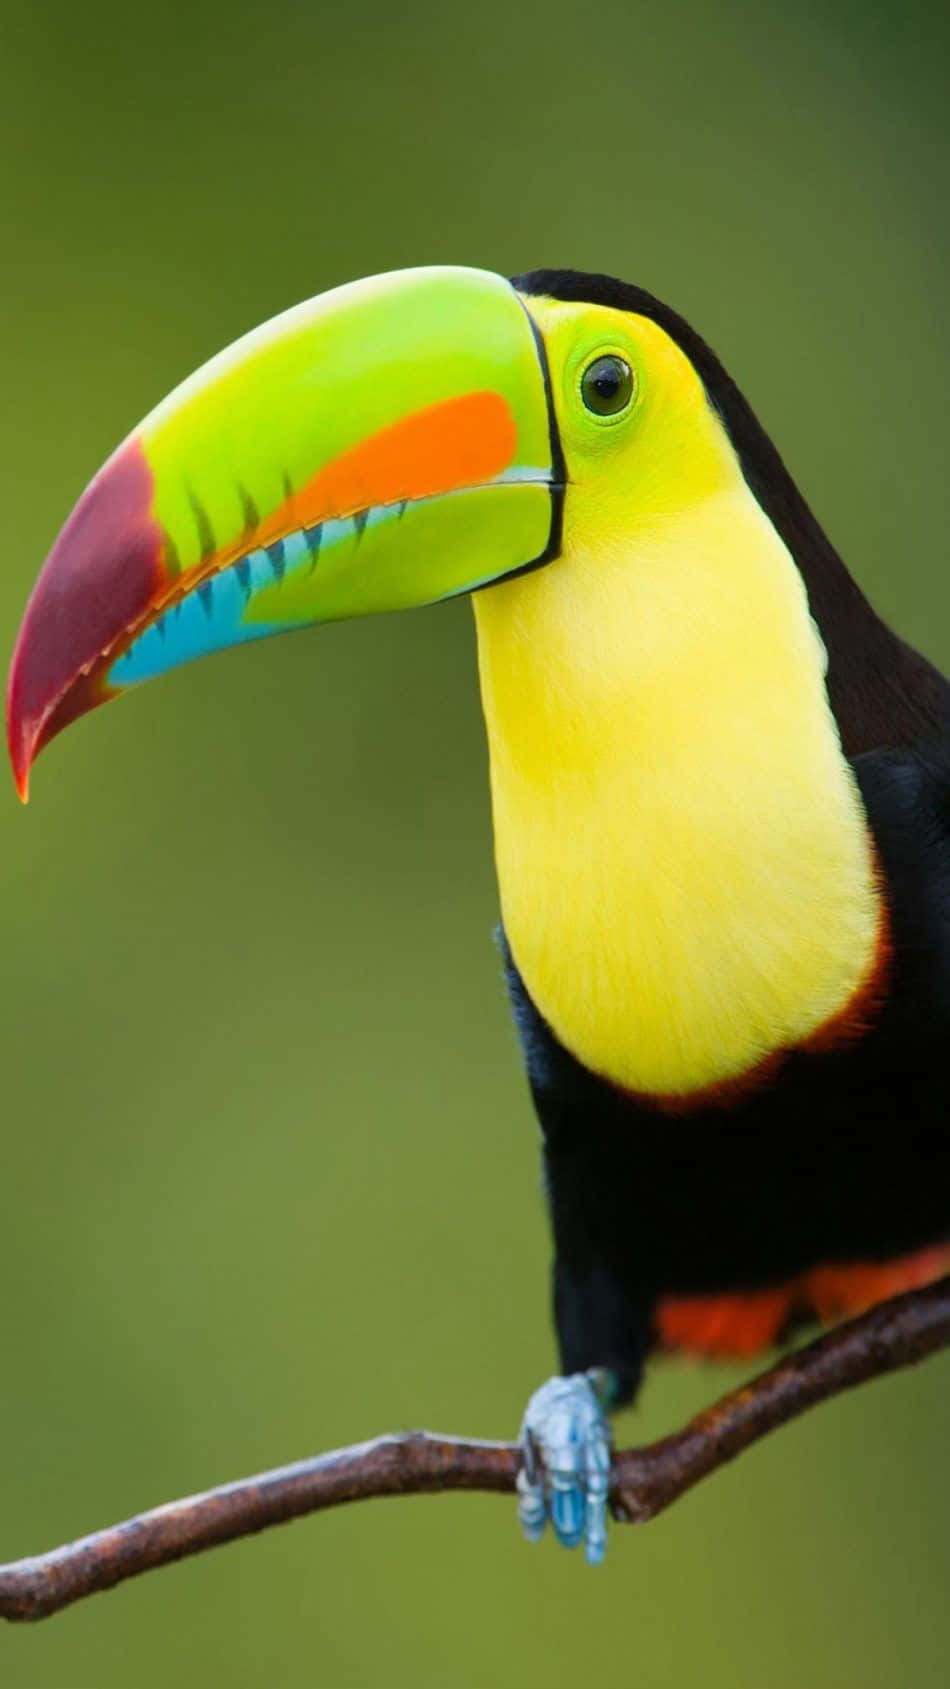 Vibrant Toucan Portrait Background